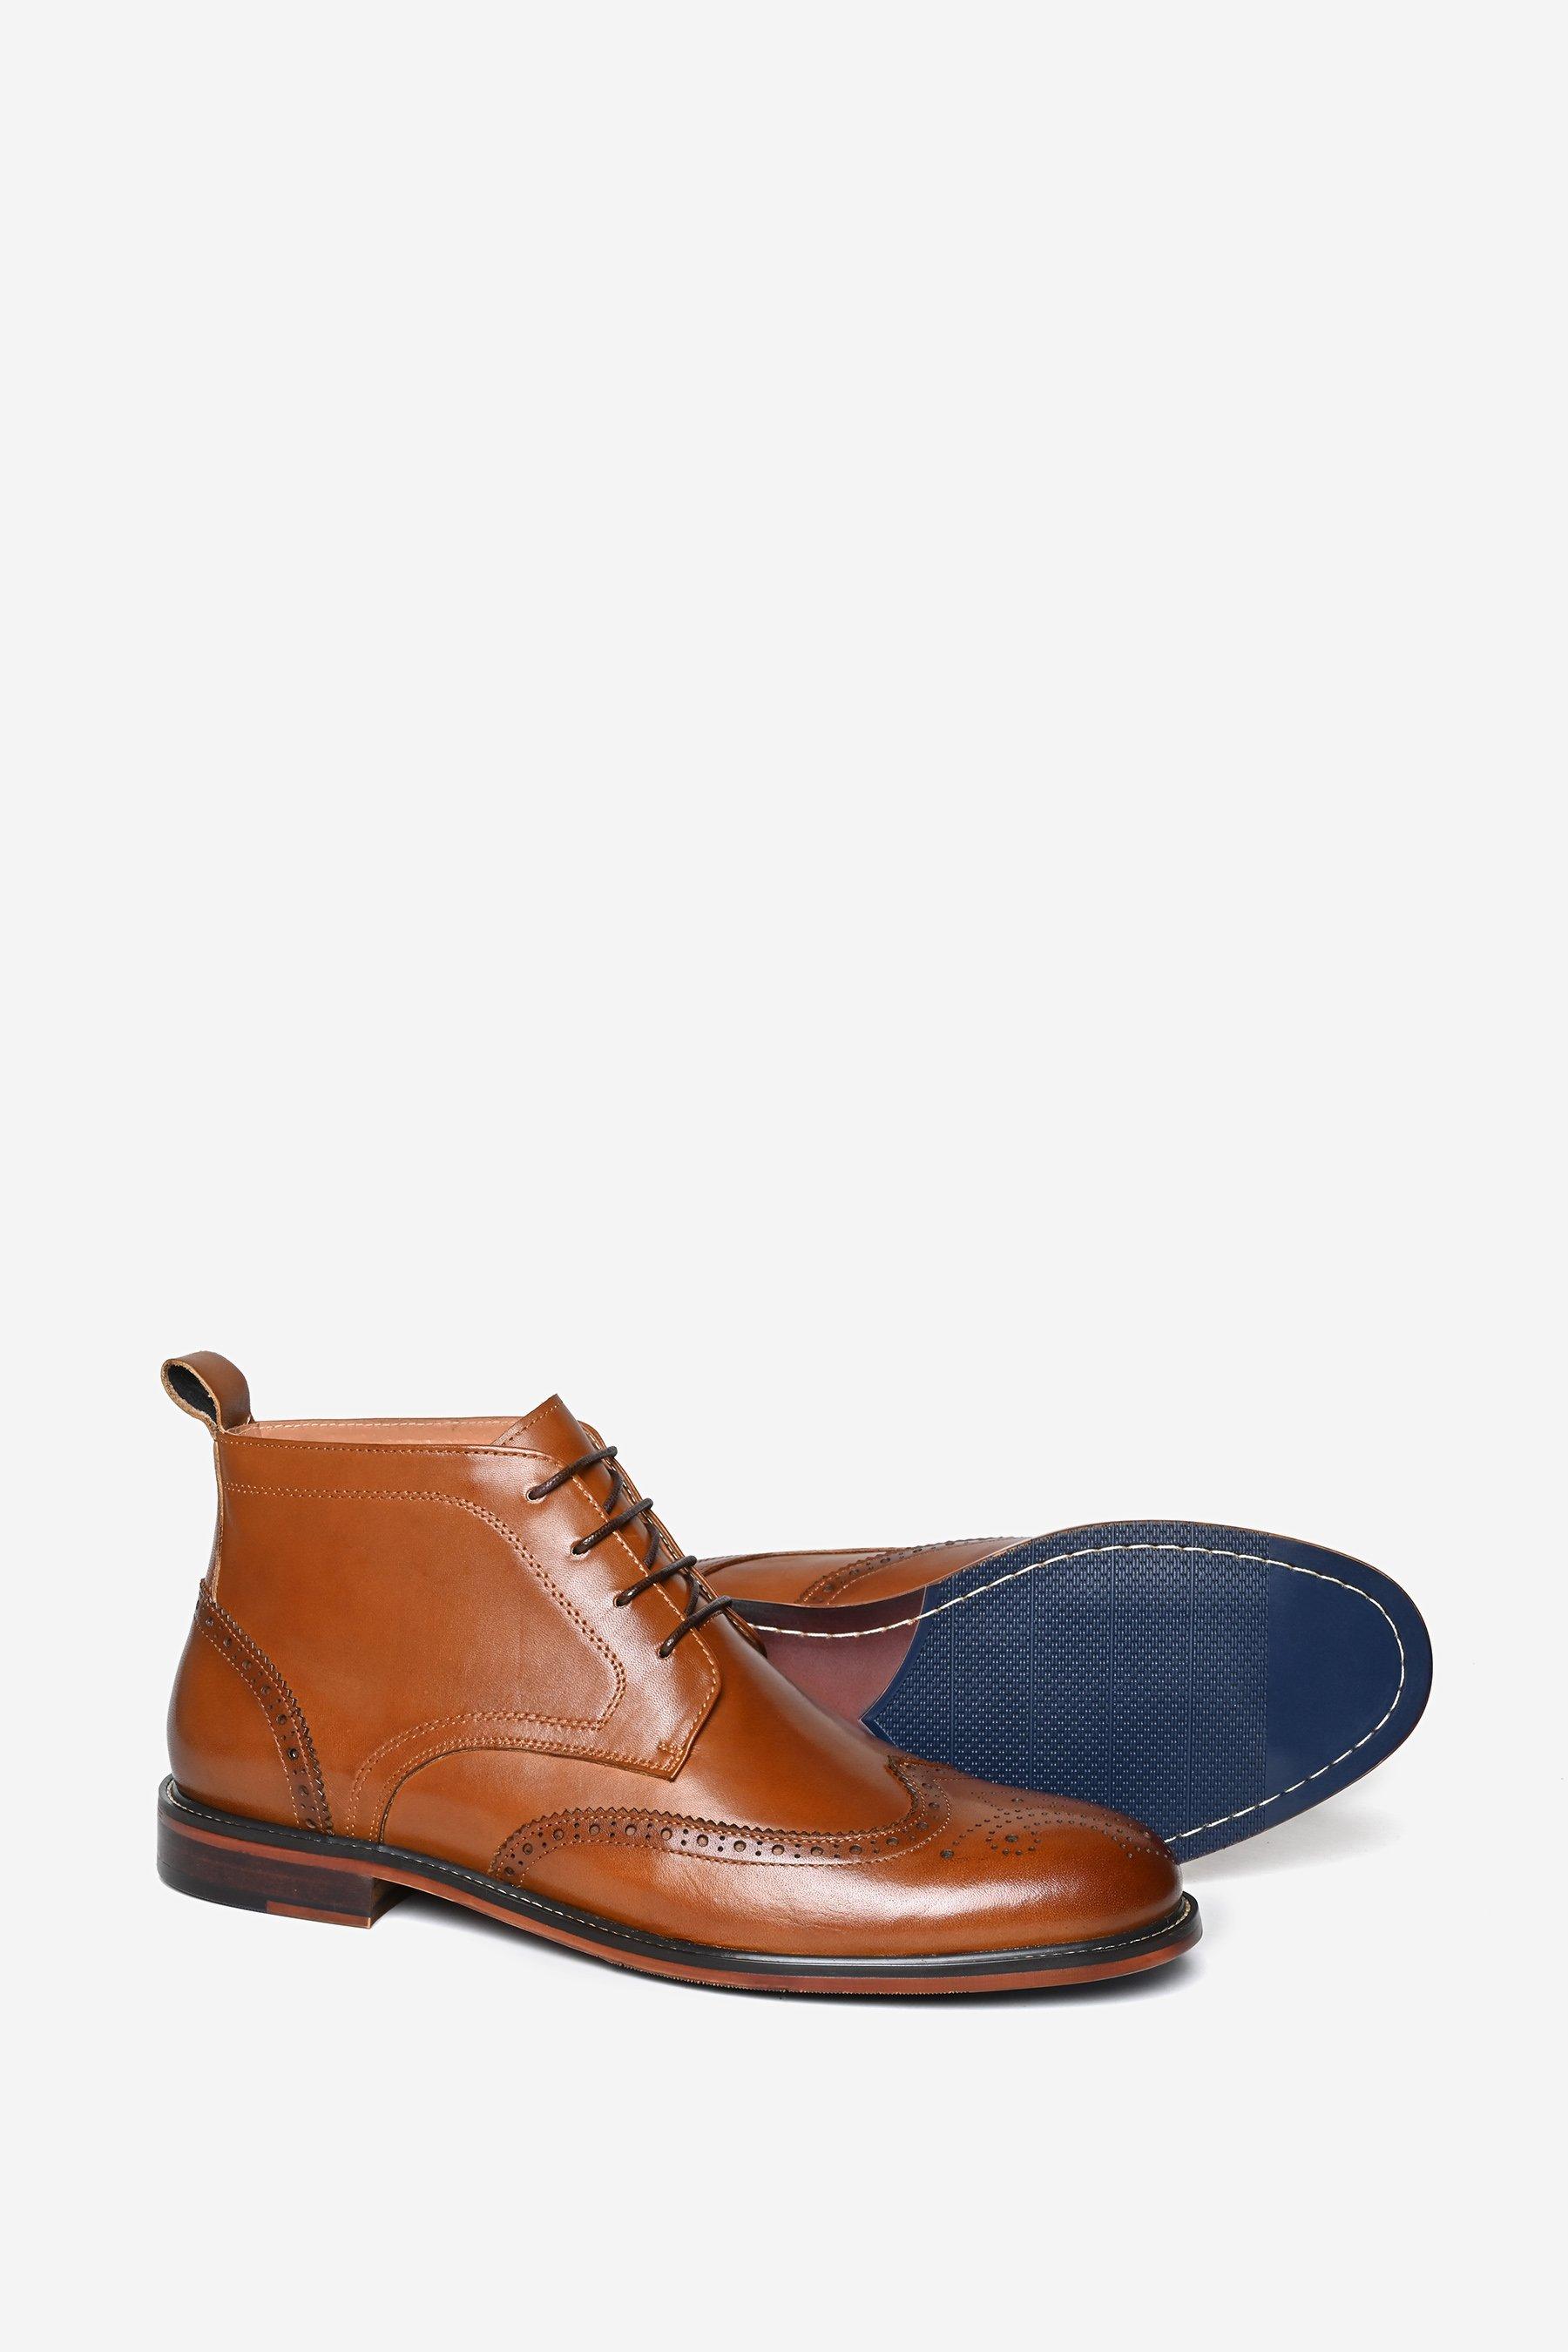 Кожаные ботинки броги премиум-класса 'Penton' Alexander Pace, коричневый